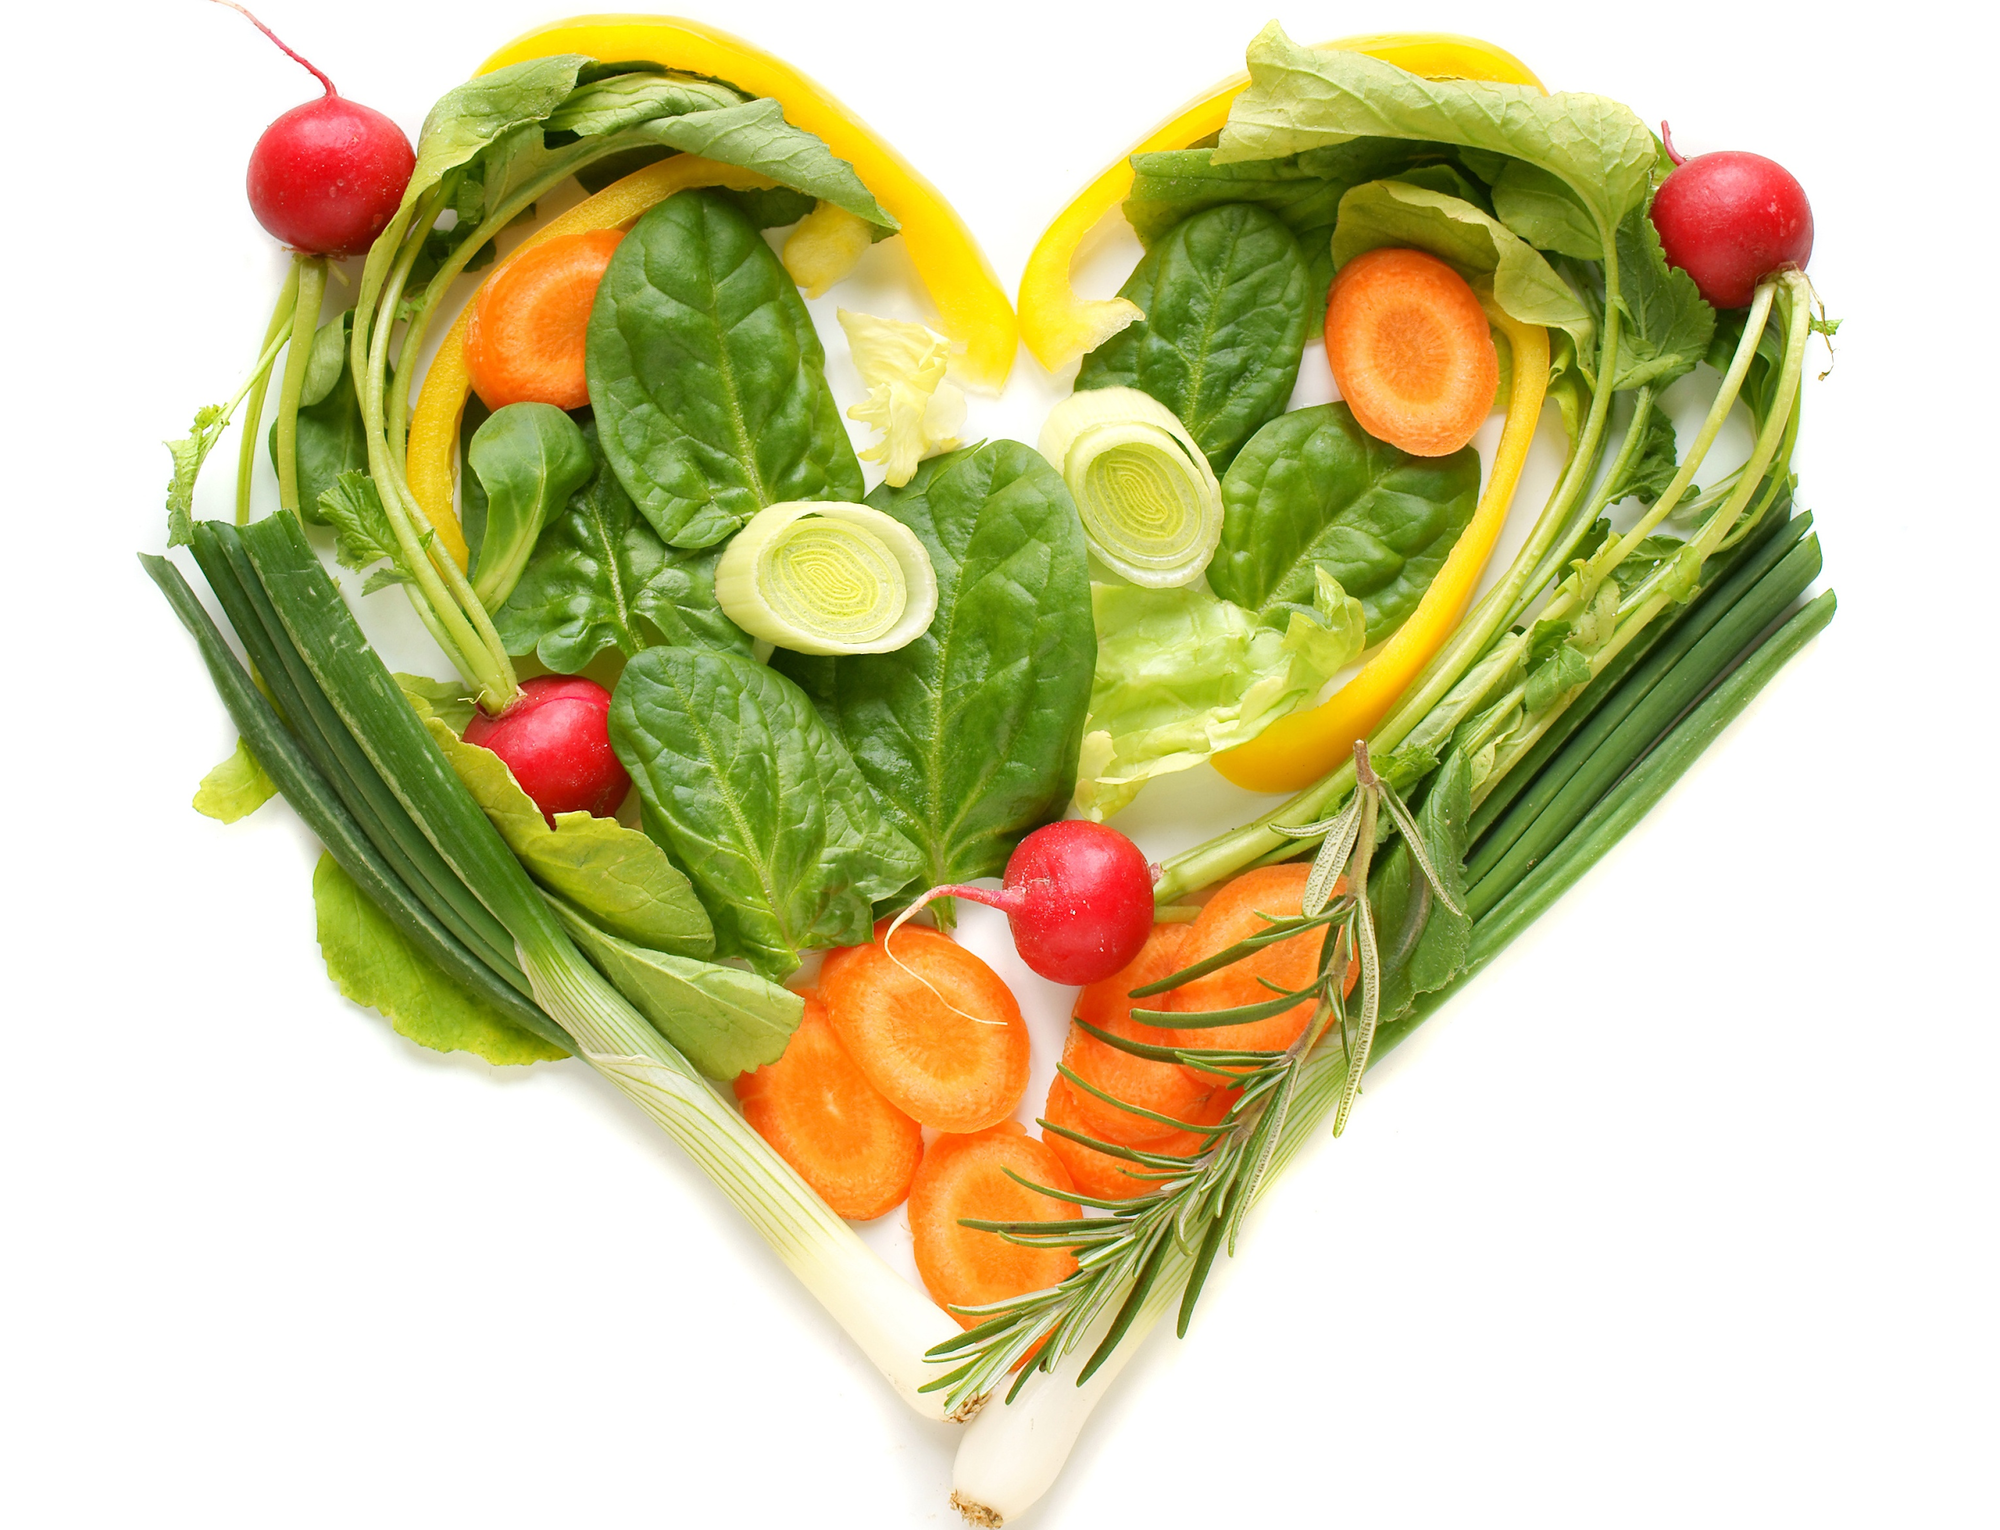 Chế độ ăn uống, lối sống tích cực giúp phòng ngừa cao huyết áp